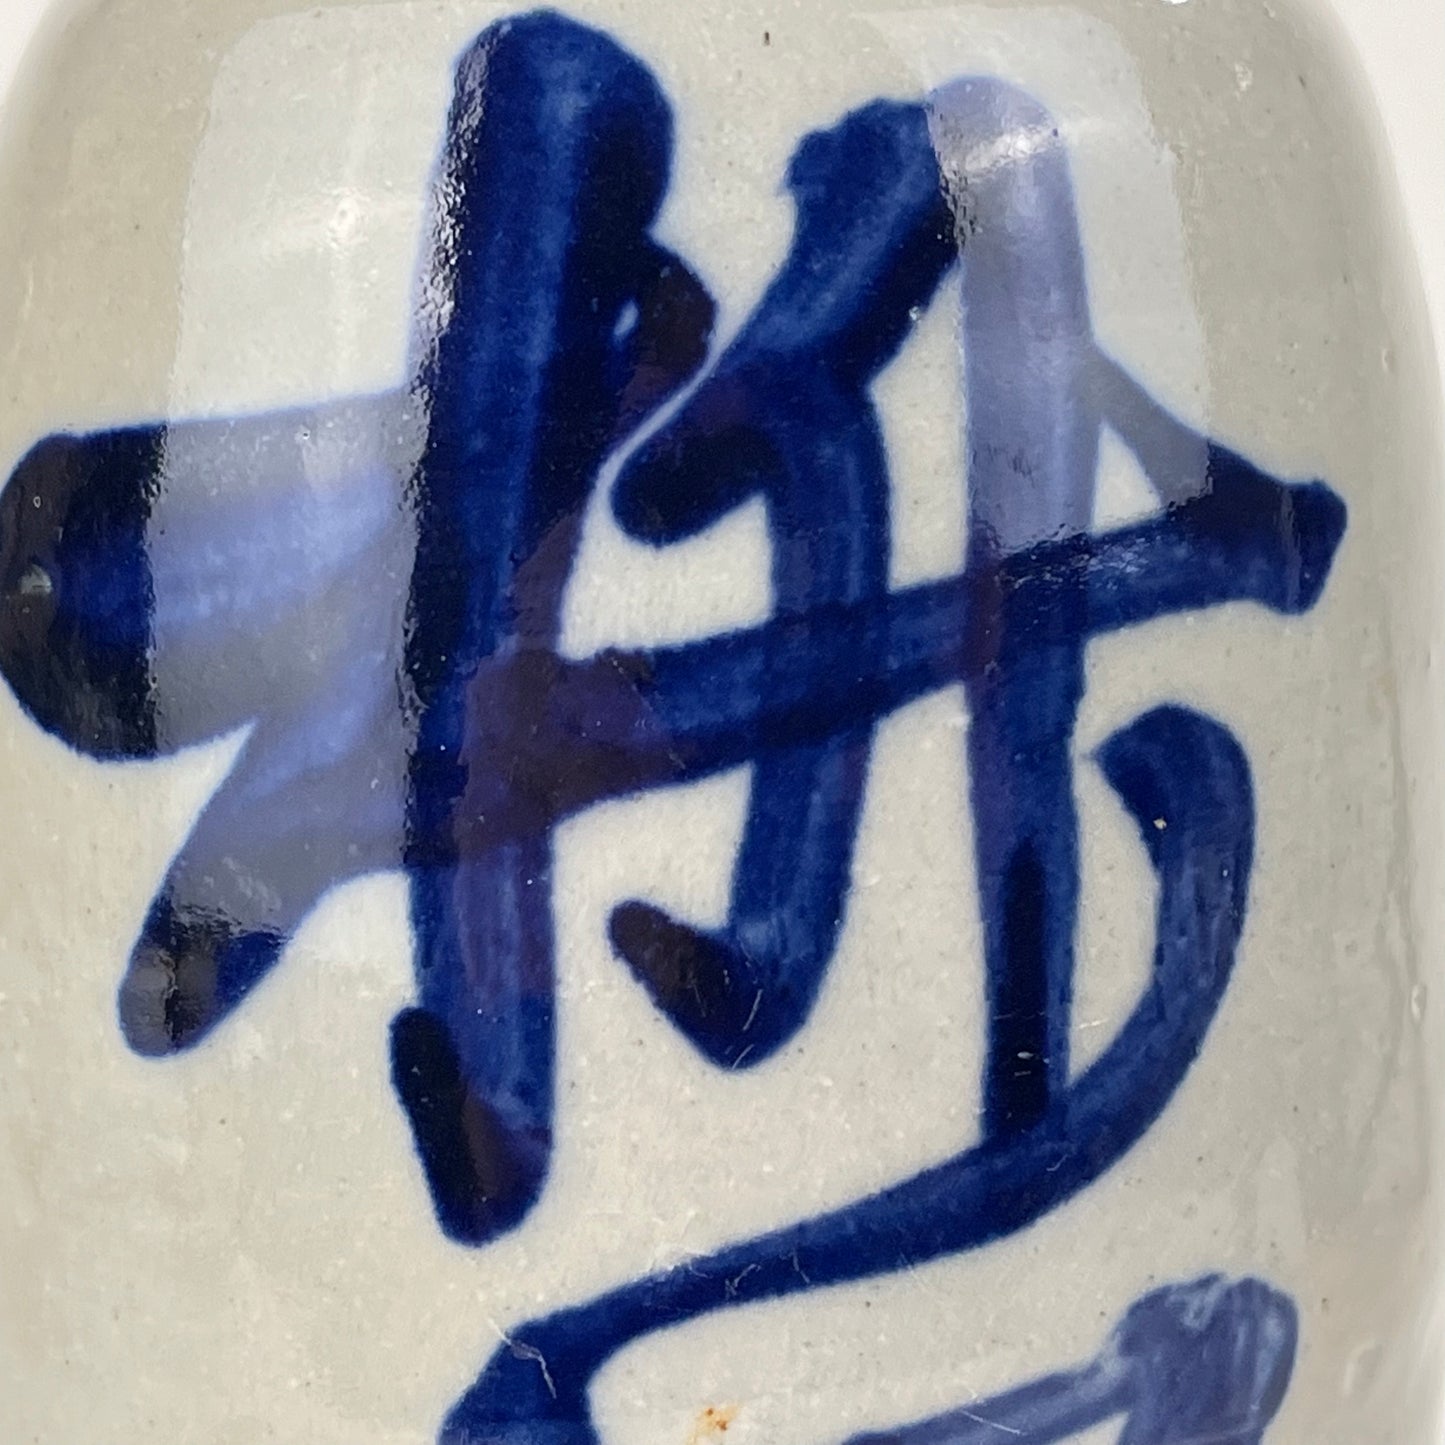 Antique Japanese Meiji Era (c1890's) Signed Tokkuri Nerrow Sake Jug Sake Blue (Vase) 9”H